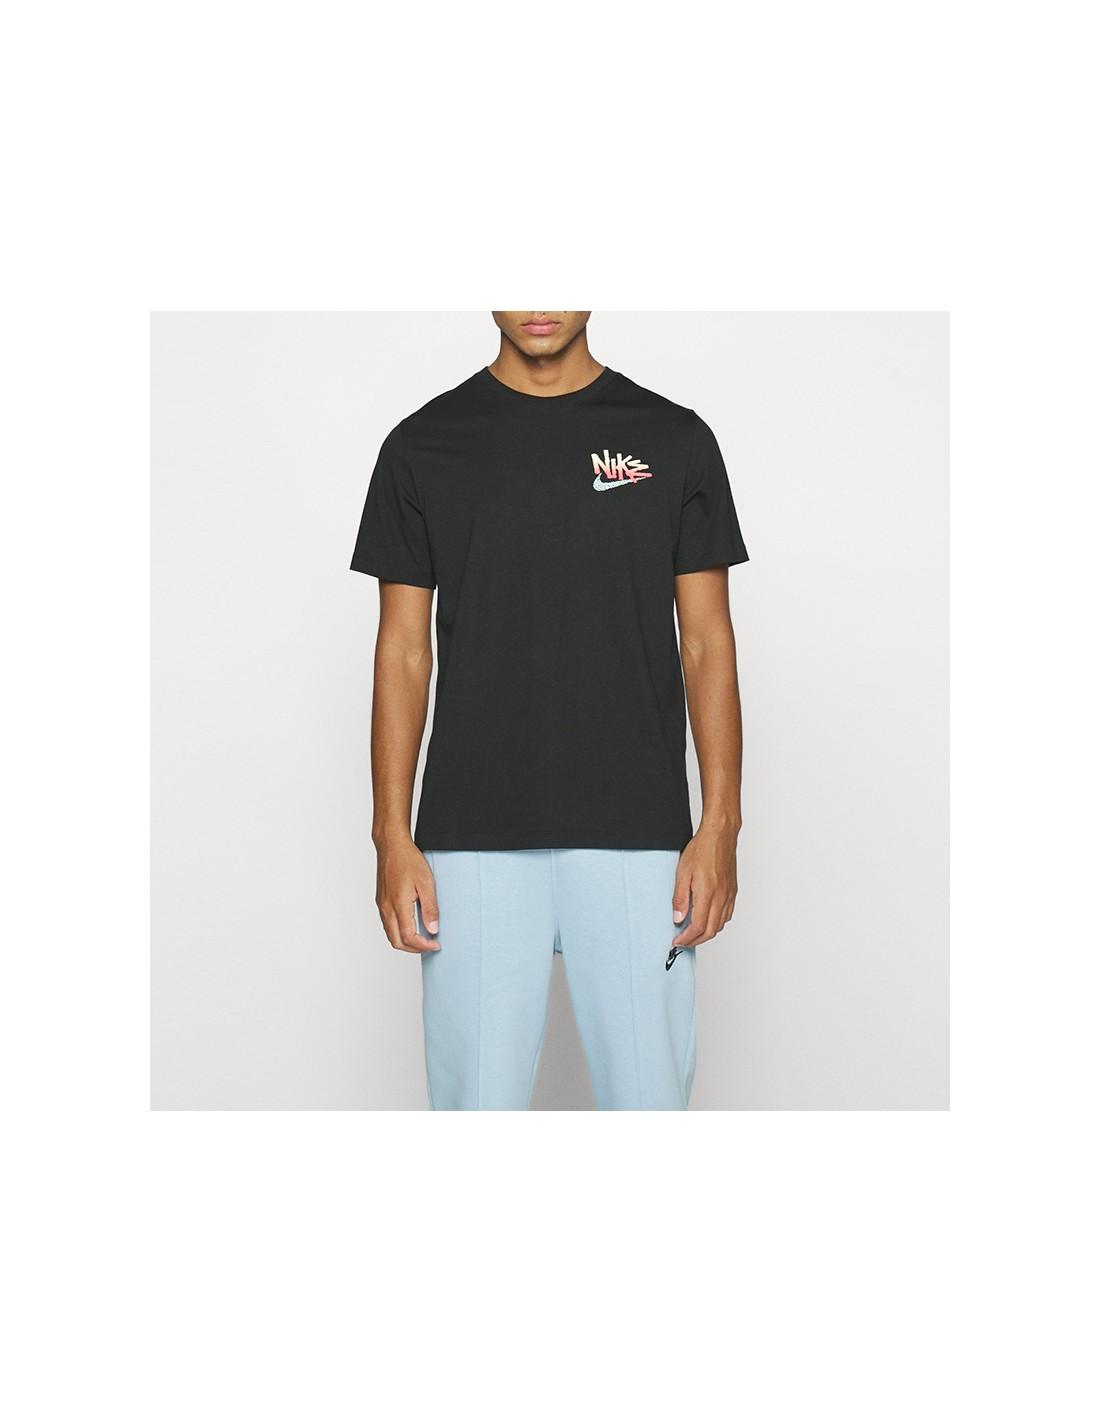 Nike T-shirt Festival Turtle in Black for Men | Lyst